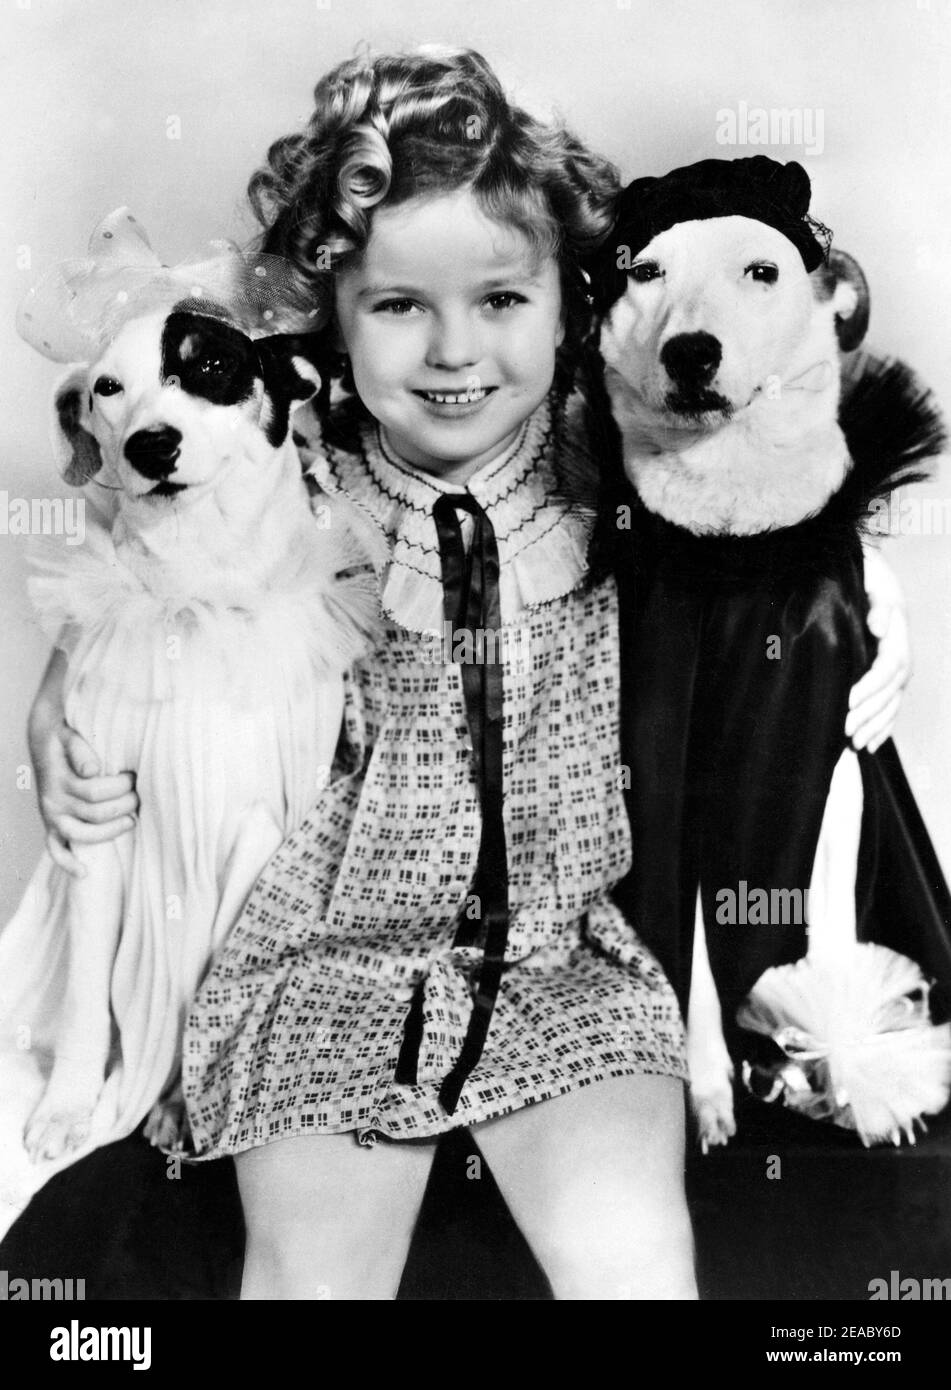 1936 ca. : l'attrice bambino SHIRLEY TEMPLE , Fox movie publicity still - FILM - CINEMA - ritratto - ritratto personalità attori attori con cane da compagnia - personalità celebrità attori con animali - cane - cani - cani - sorriso - sorriso ---- Archivio GBB Foto Stock